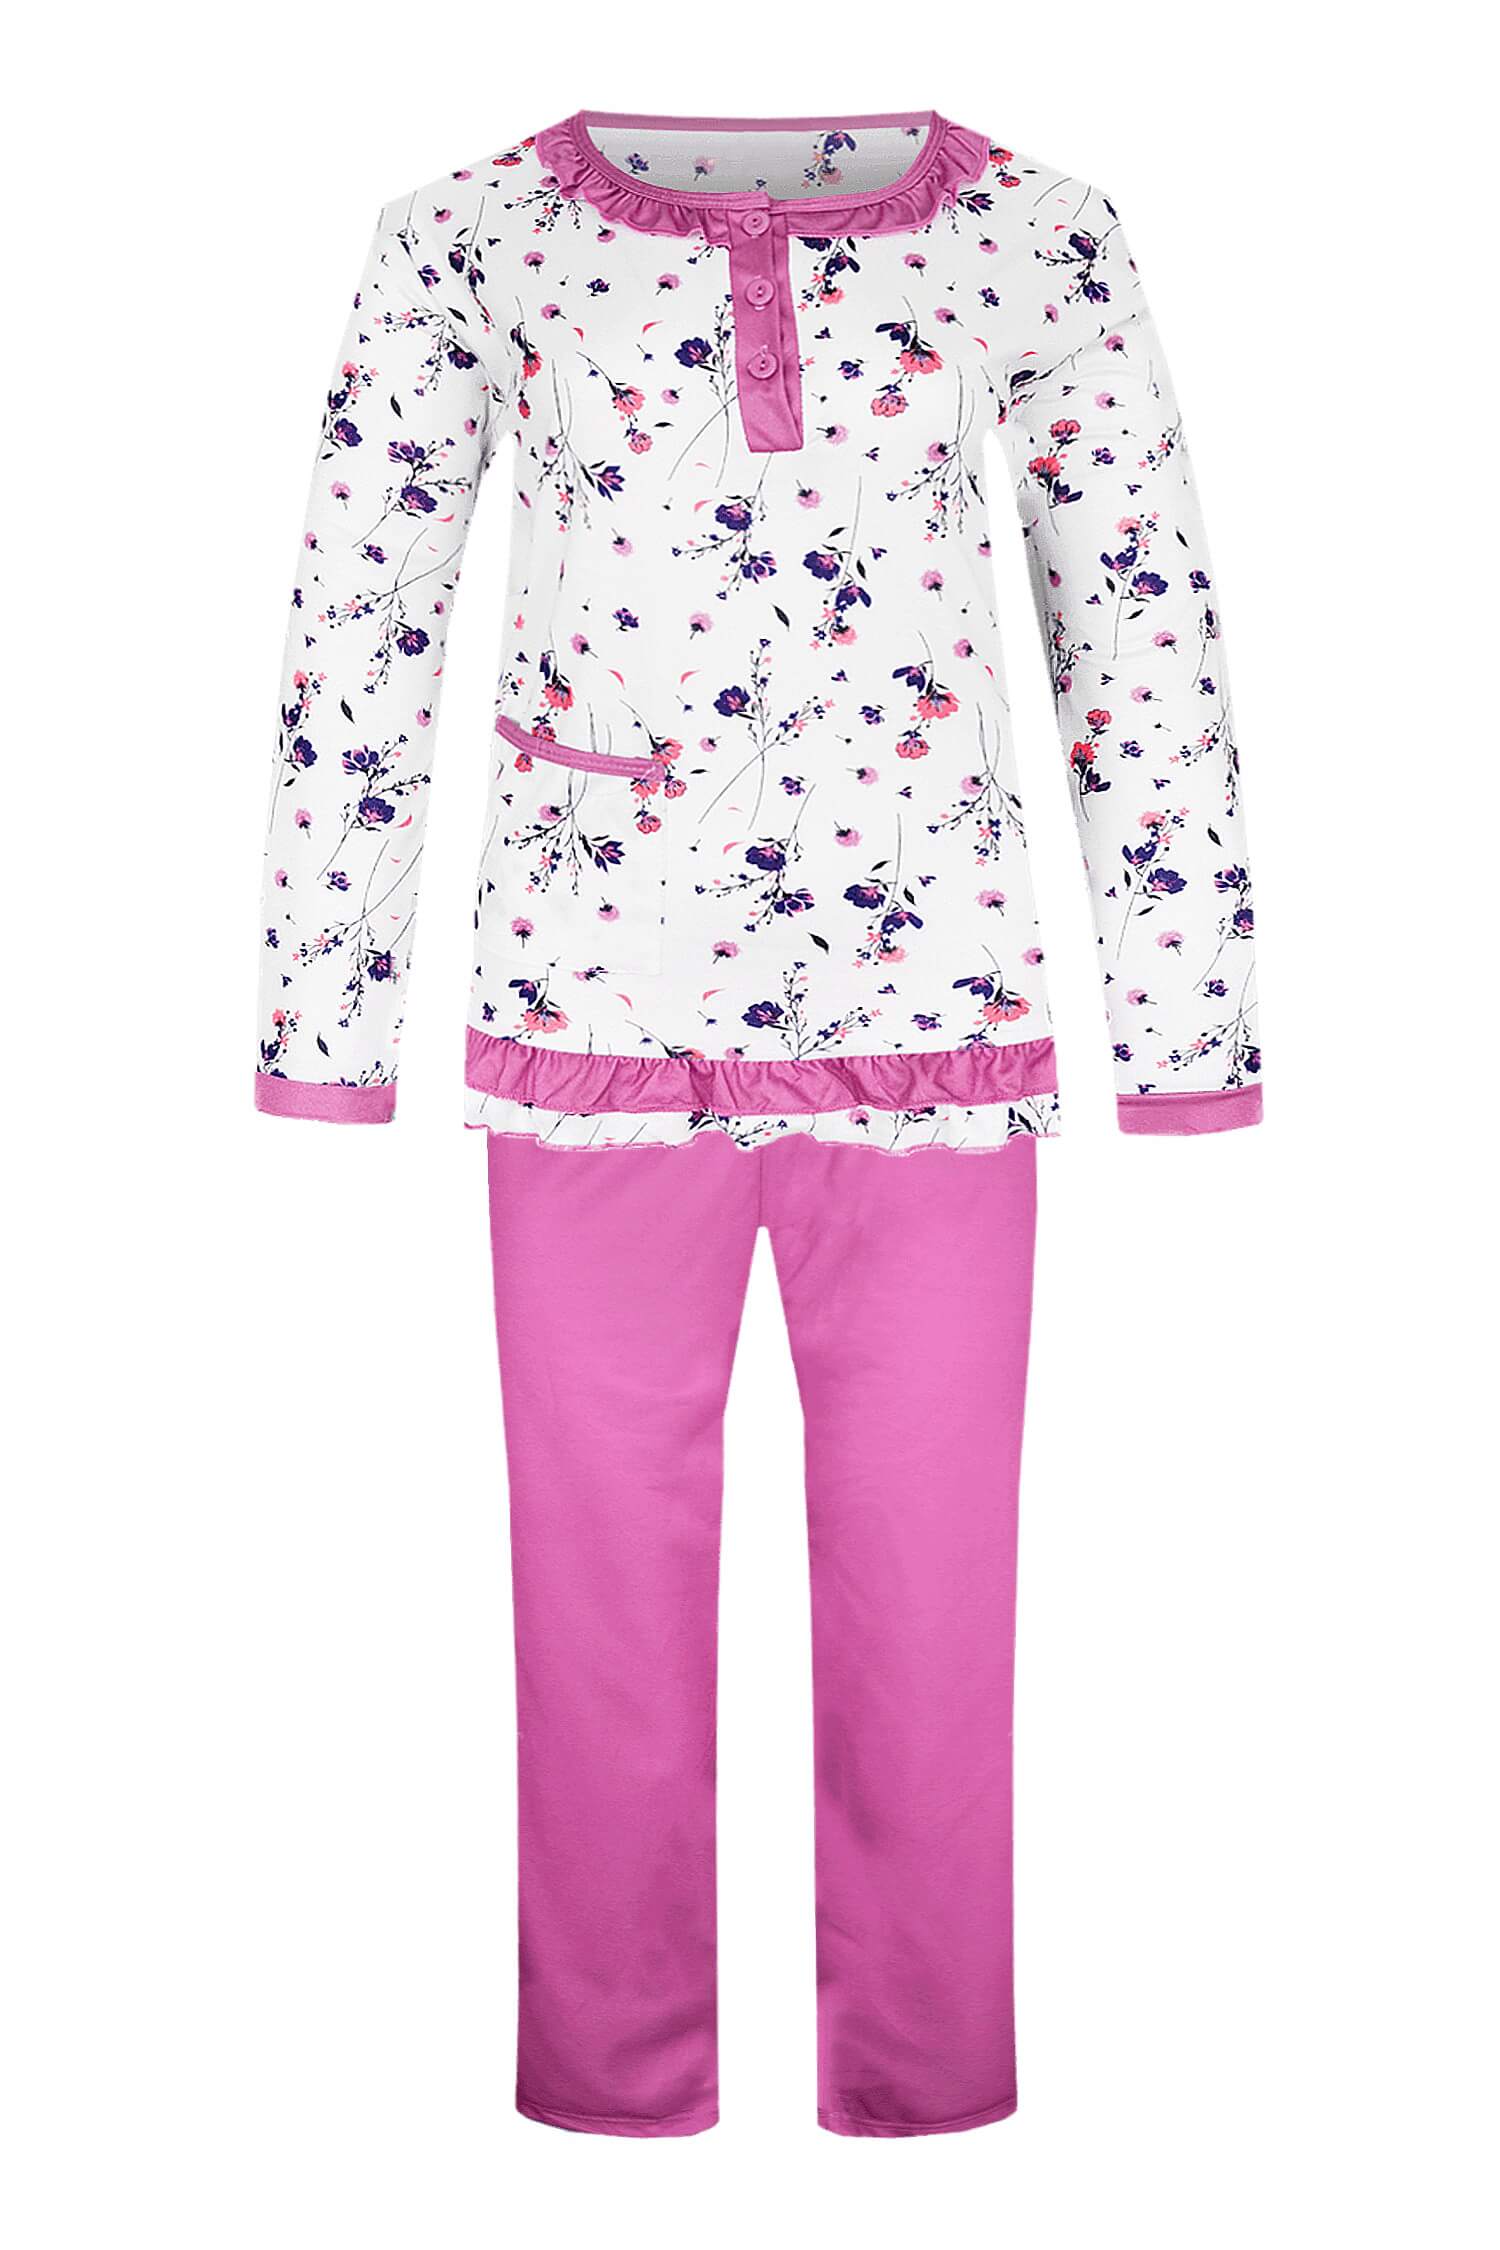 Fiore dvojdílné pyžamo dlouhé kytičky 2300 XL růžová